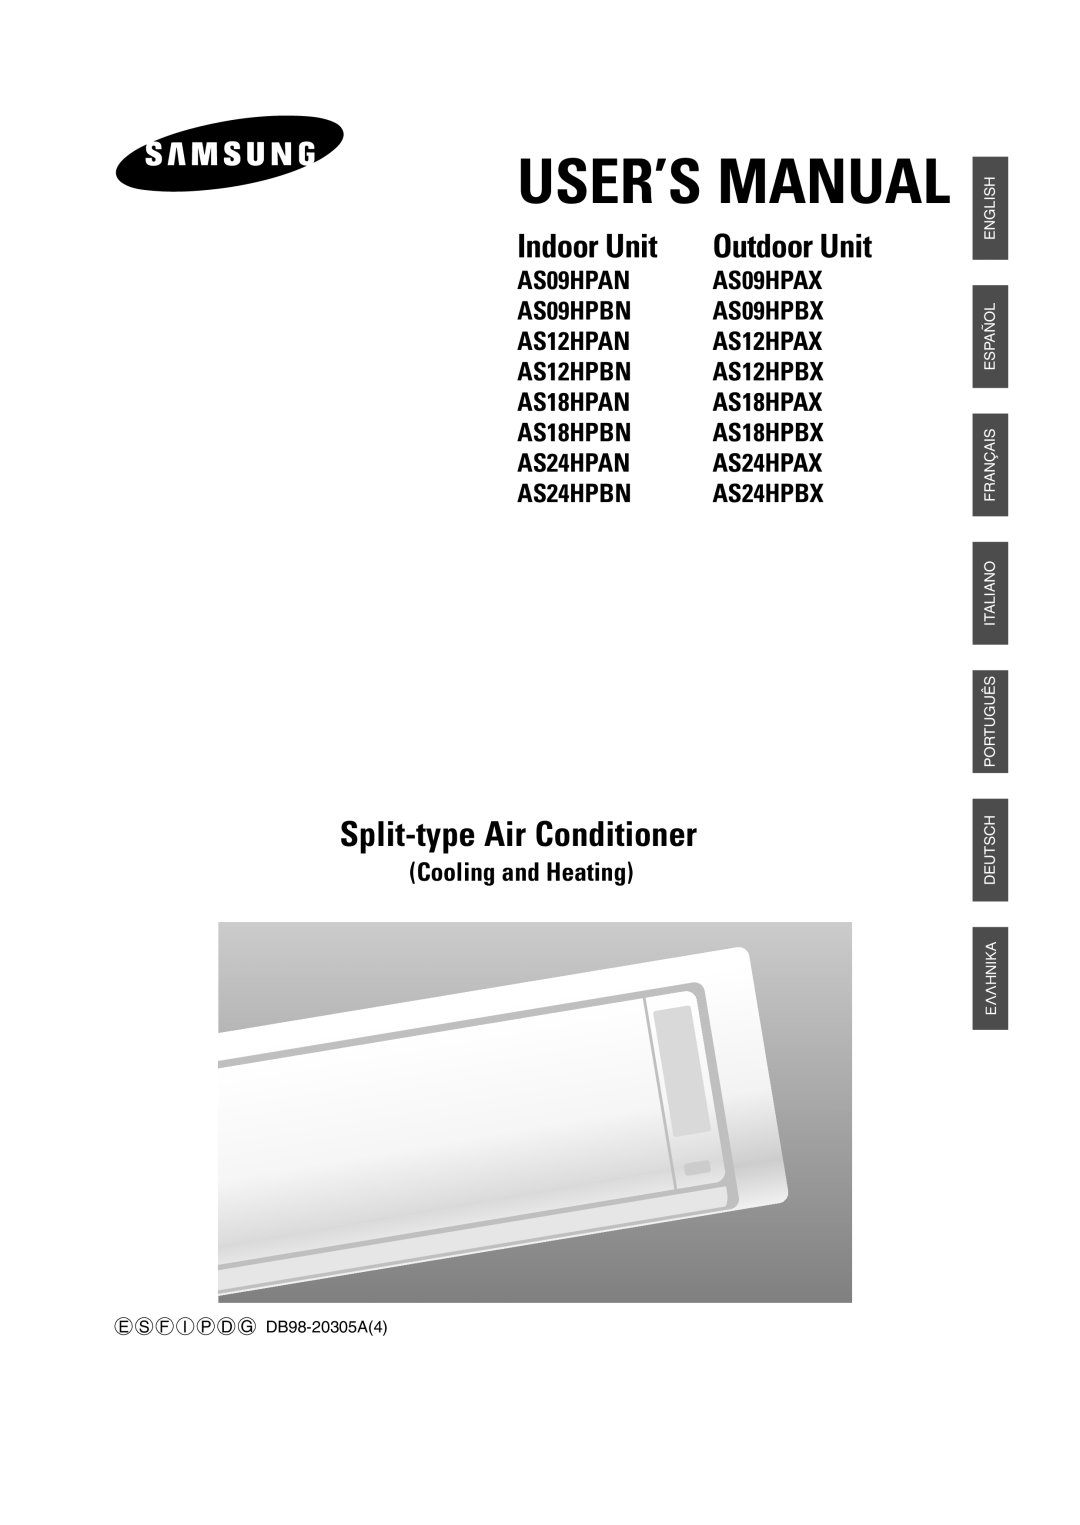 Samsung AS24HPBN, AS09HPBN, AS18HPBN, AS12HPBX, AS12HPBN manual User’S Manual, Split-type Air Conditioner, Indoor Unit 